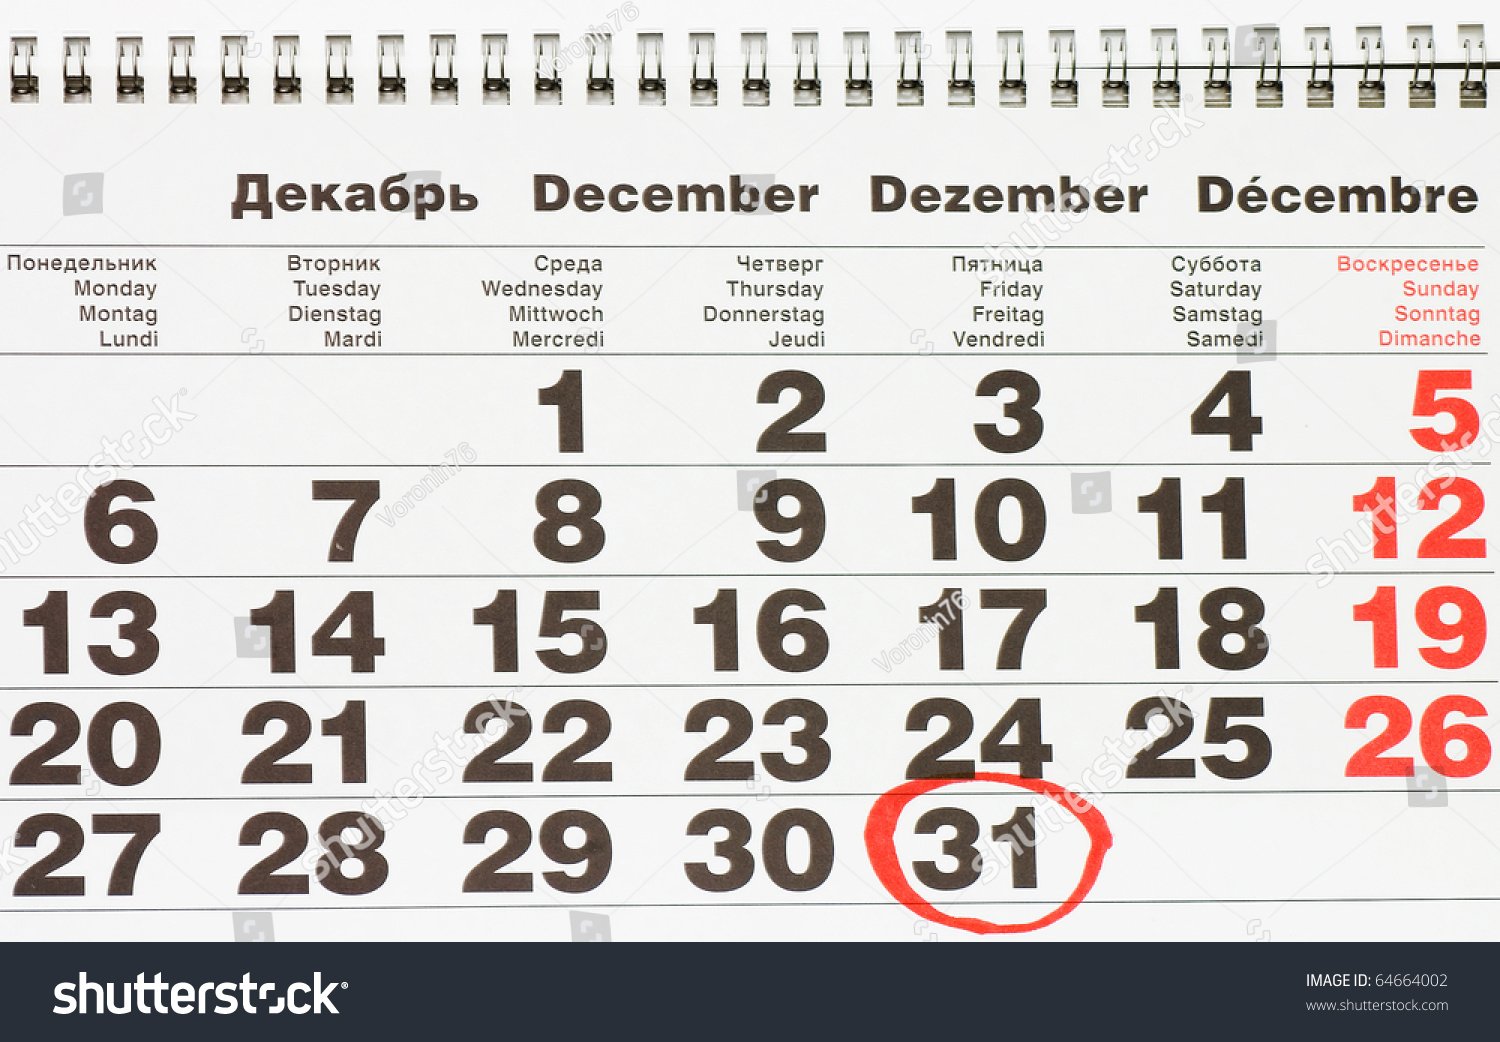 Расписание 31 декабря. Календарь 31 декабря. Календарь с обведенной датой. Календарь с выделенным днем. Календарь с выделенной датой.